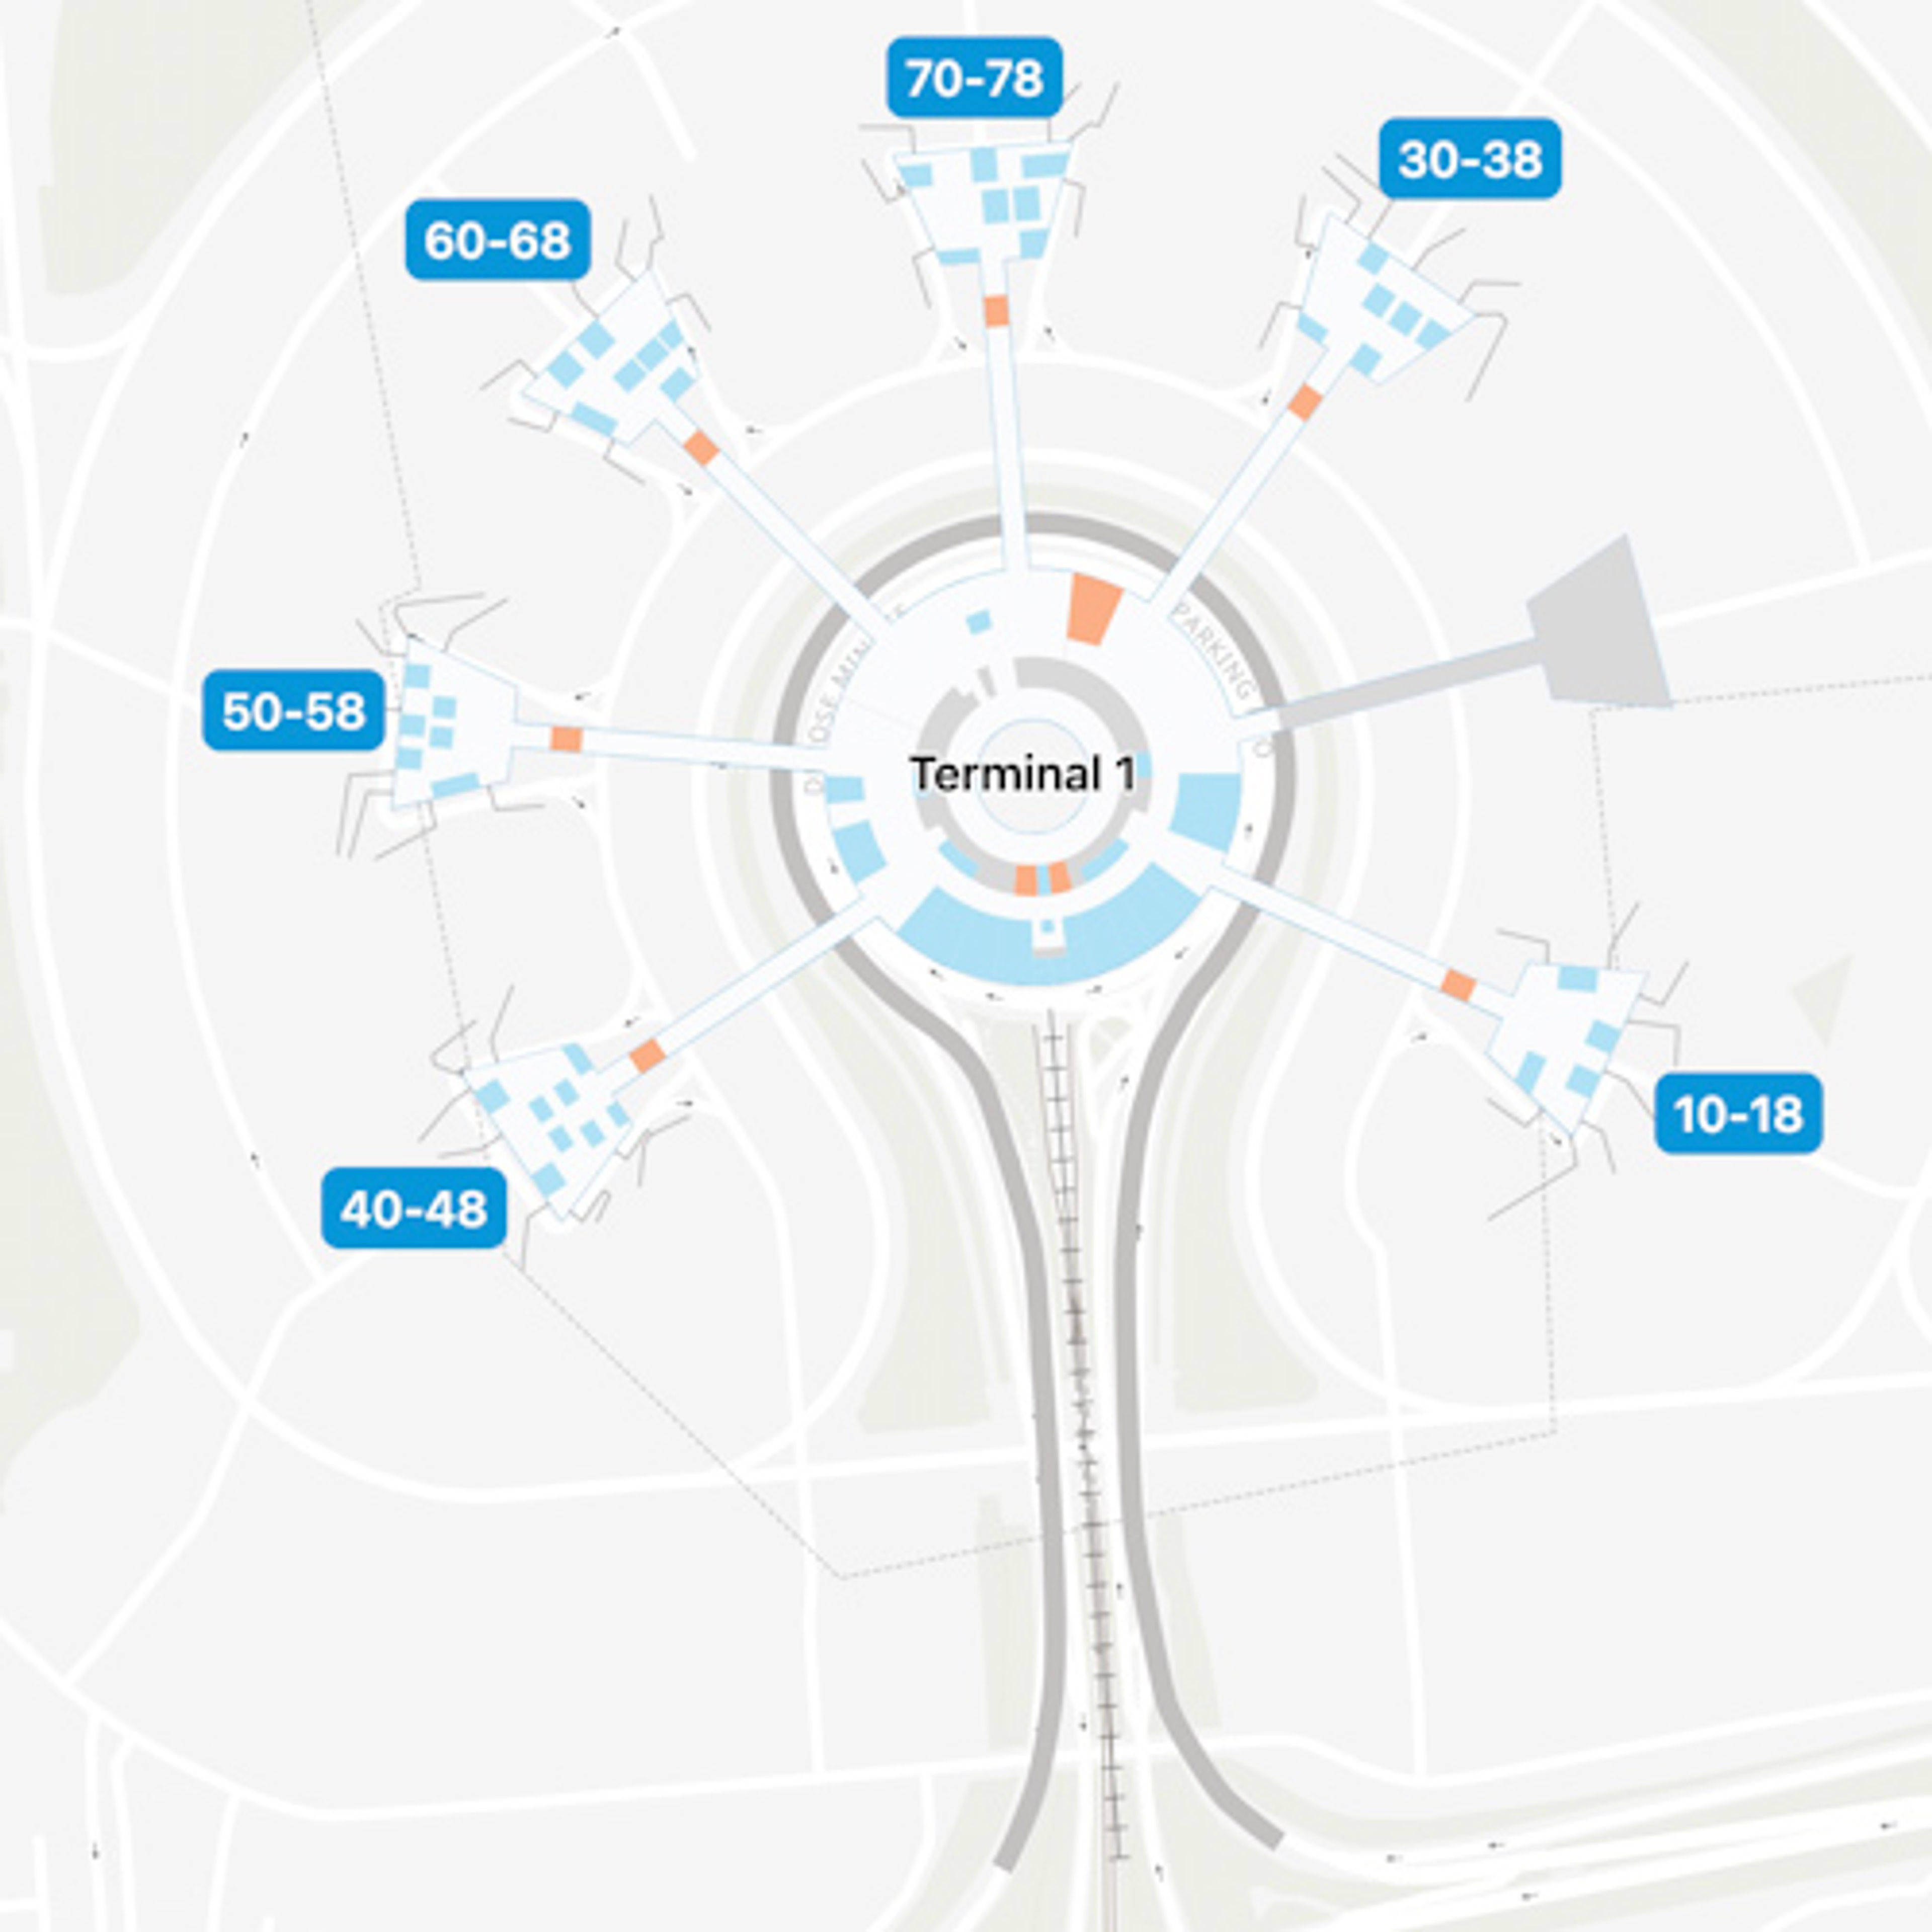 CDG Terminal 1 Map